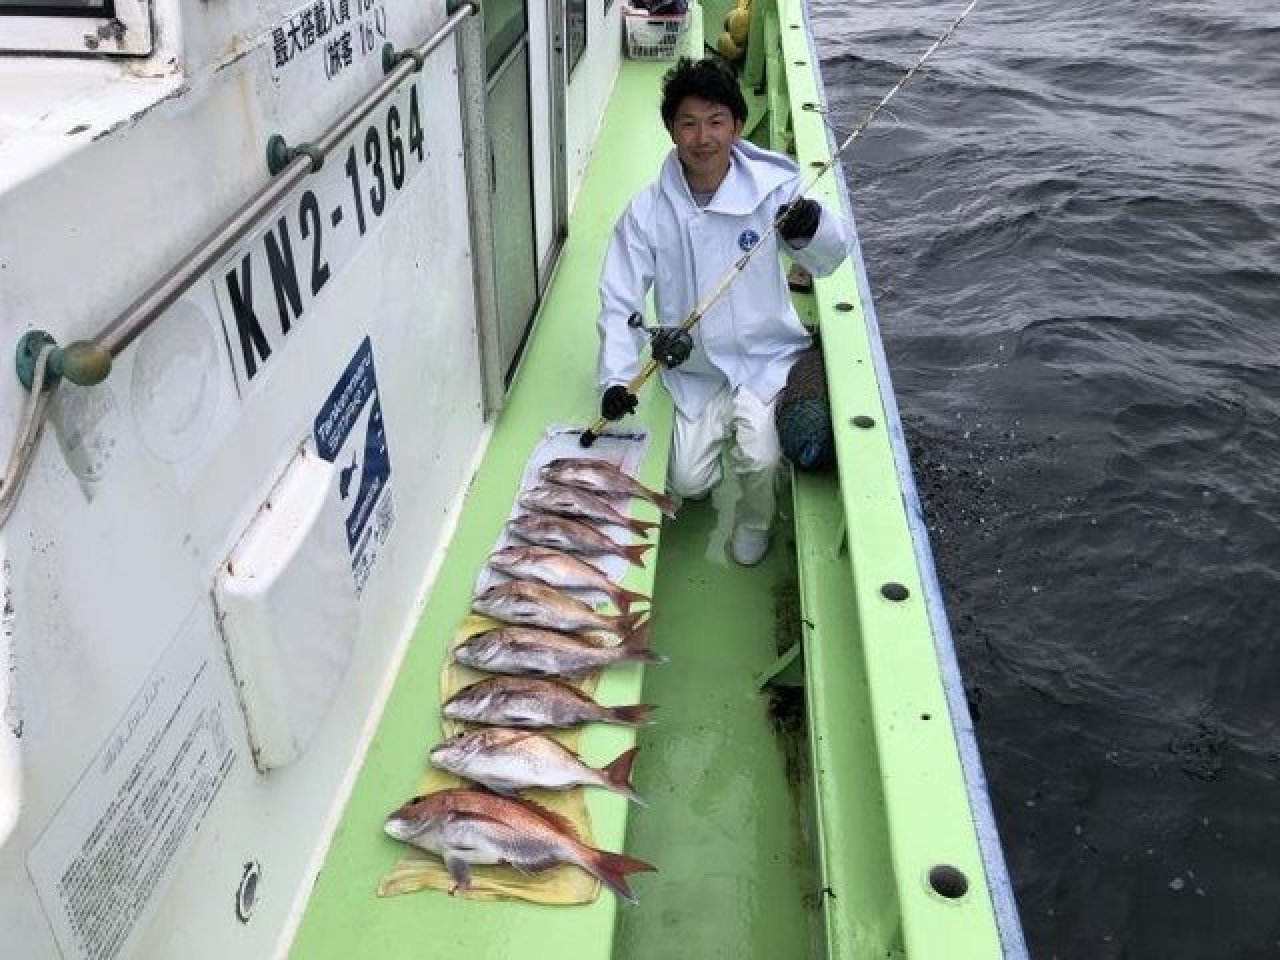 【釣果速報】神奈川県丸又丸でマダイTOP匹9匹をゲット！他メジナ・イサキも釣れ、釣行は大充実！